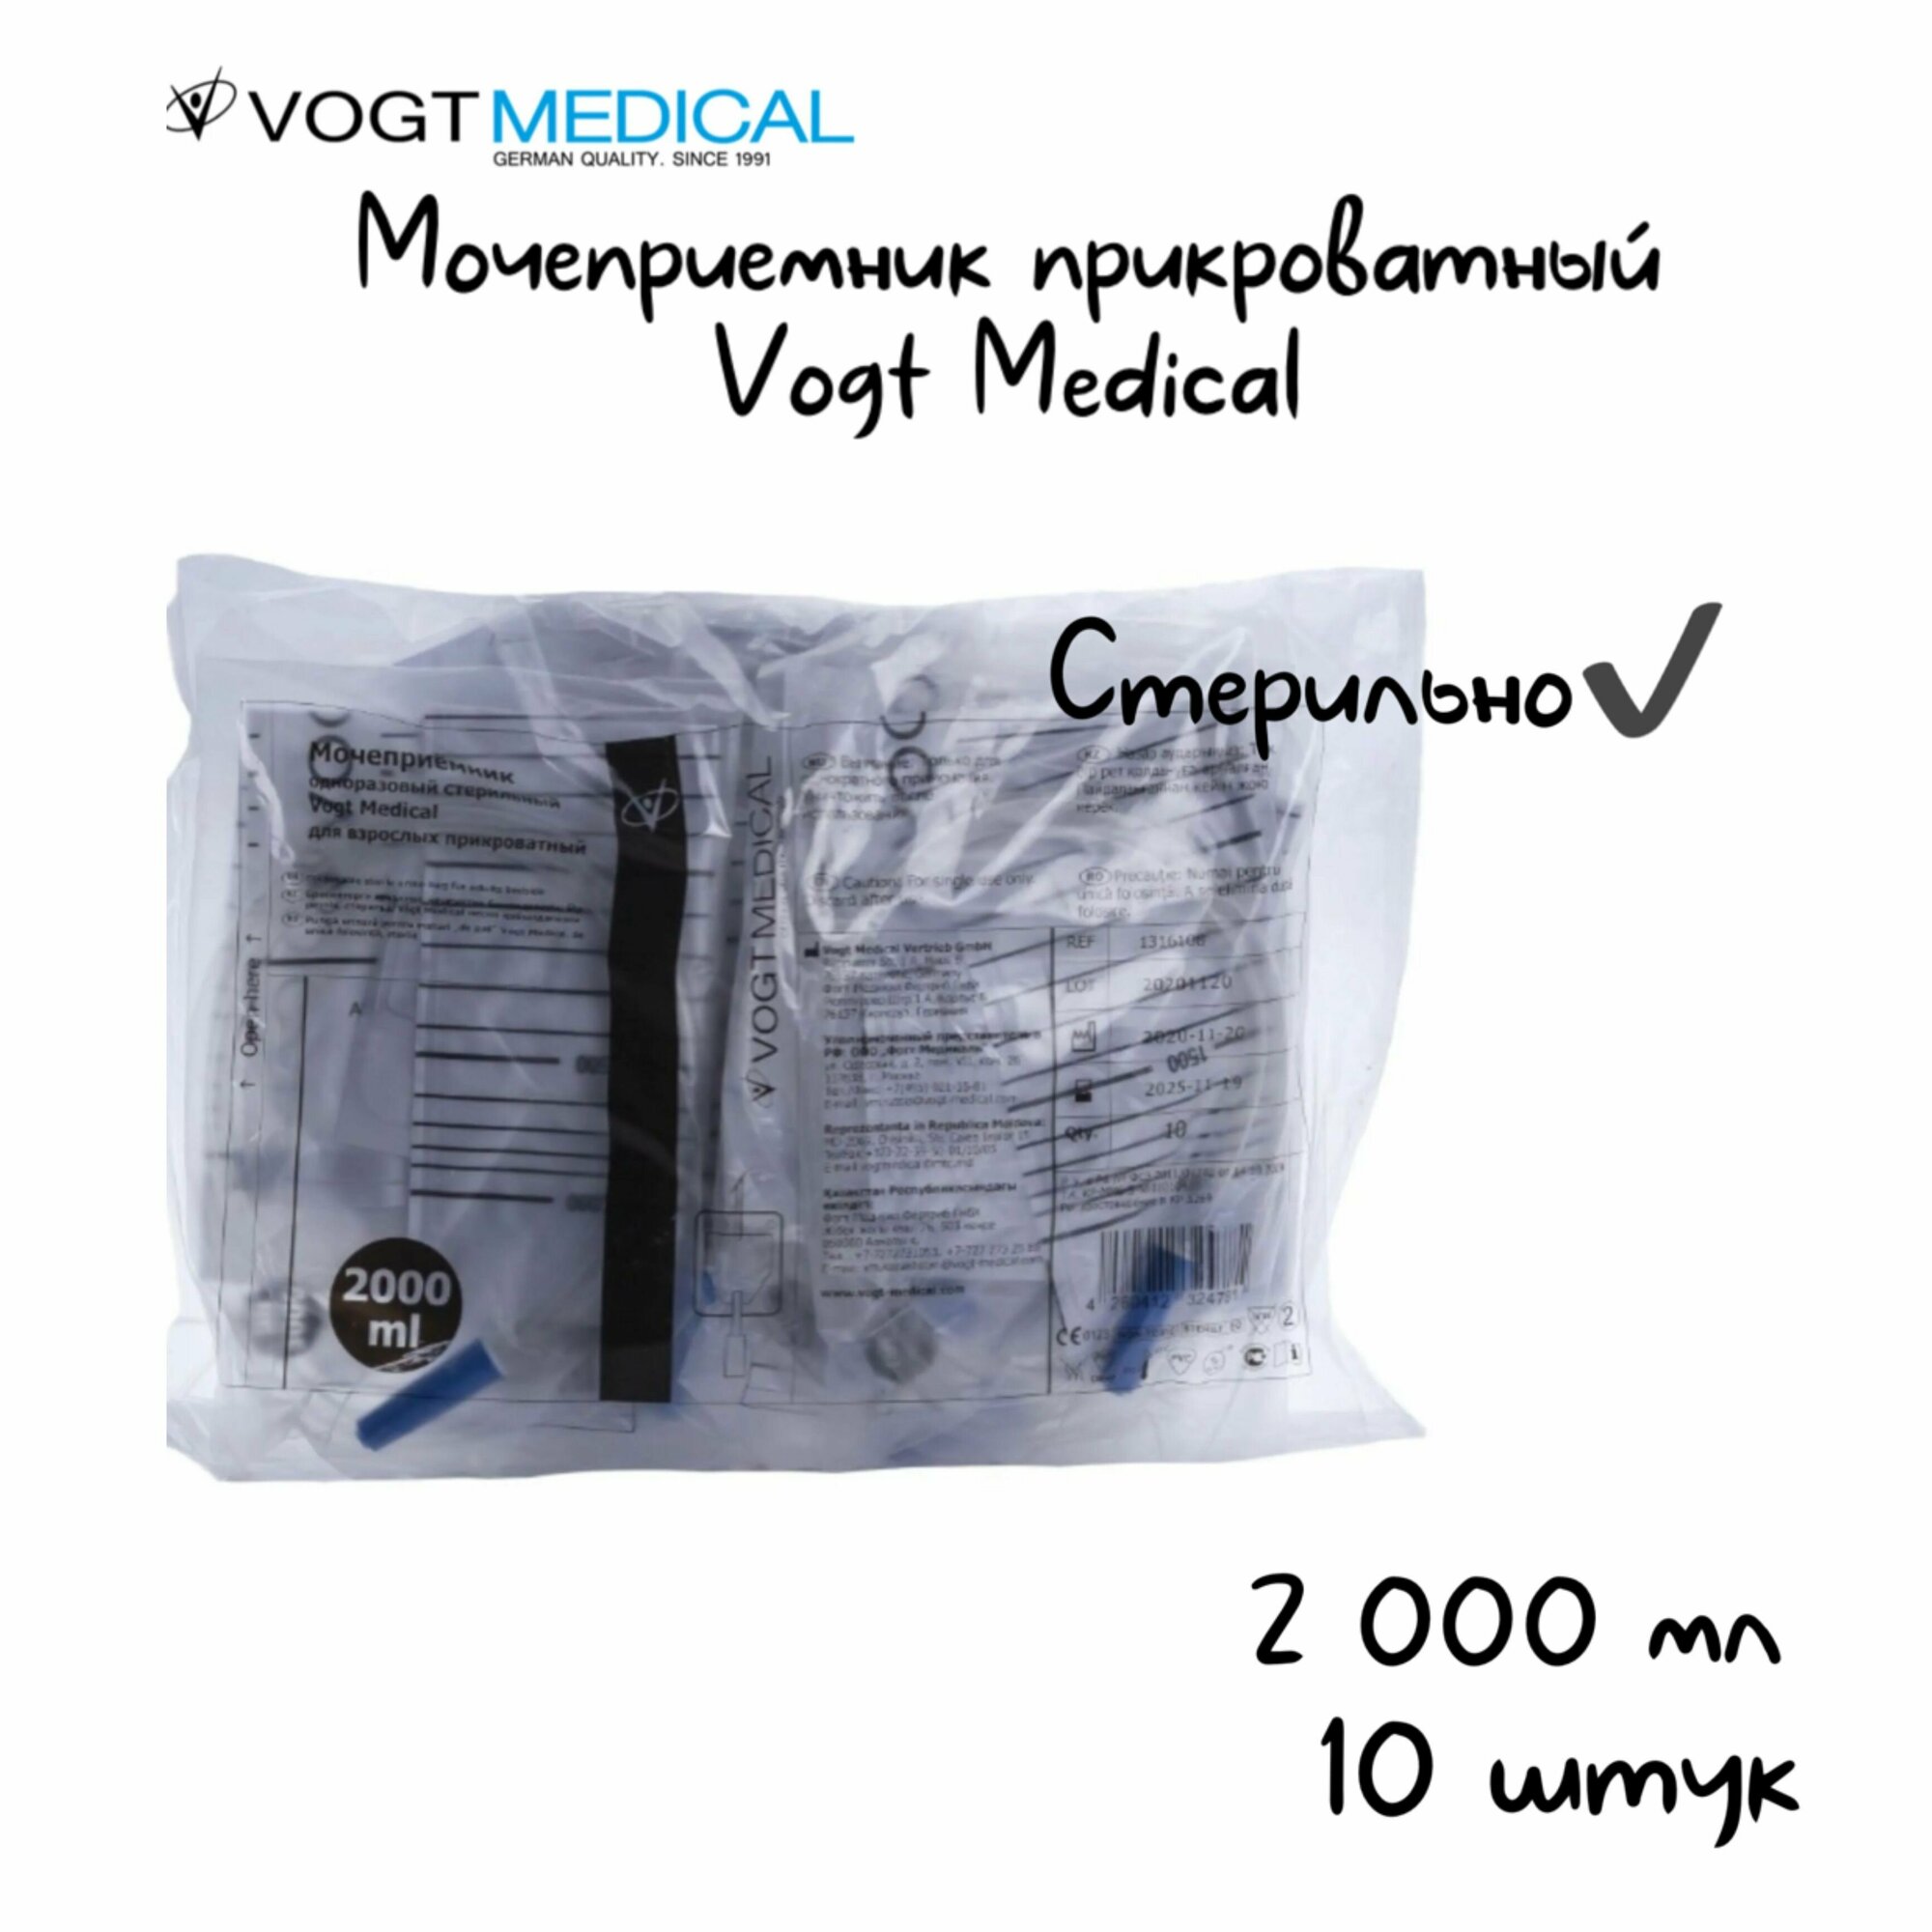 Мочеприемник прикроватный VOGT MEDICAL, крестовидный слив 2000 мл /10шт в упаковке